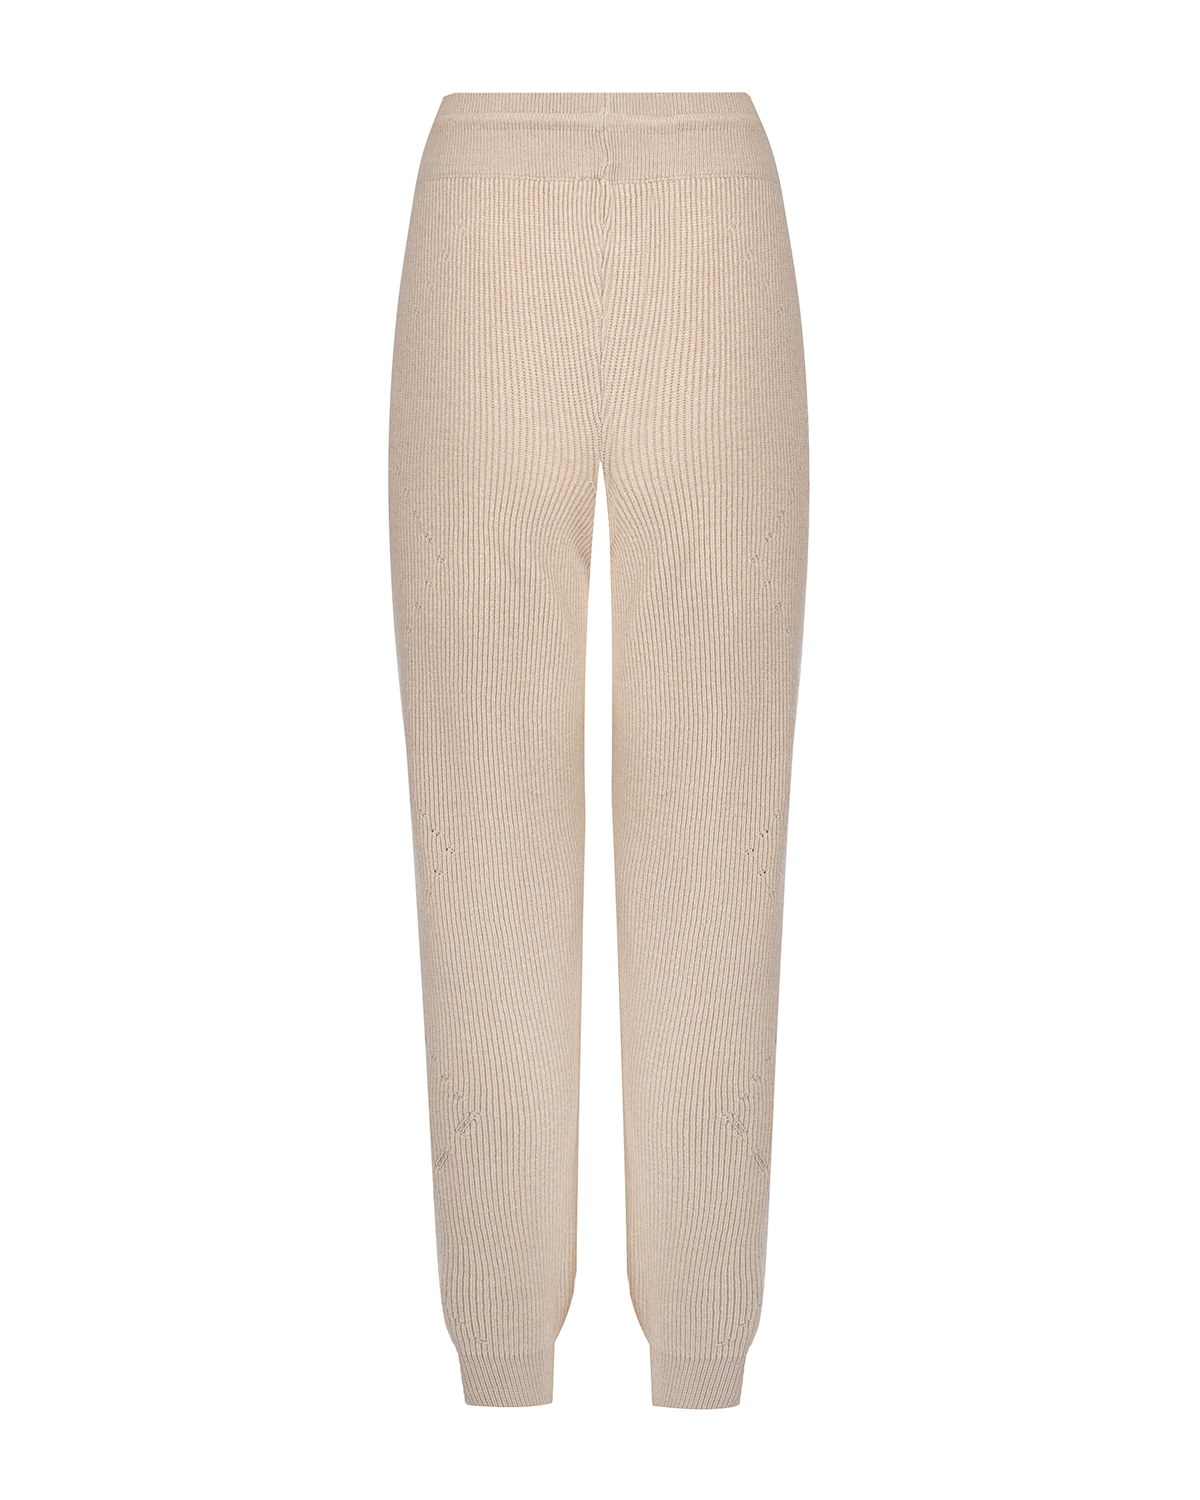 Бежевые брюки с ромбами из люрекса Panicale, размер 46, цвет бежевый - фото 2